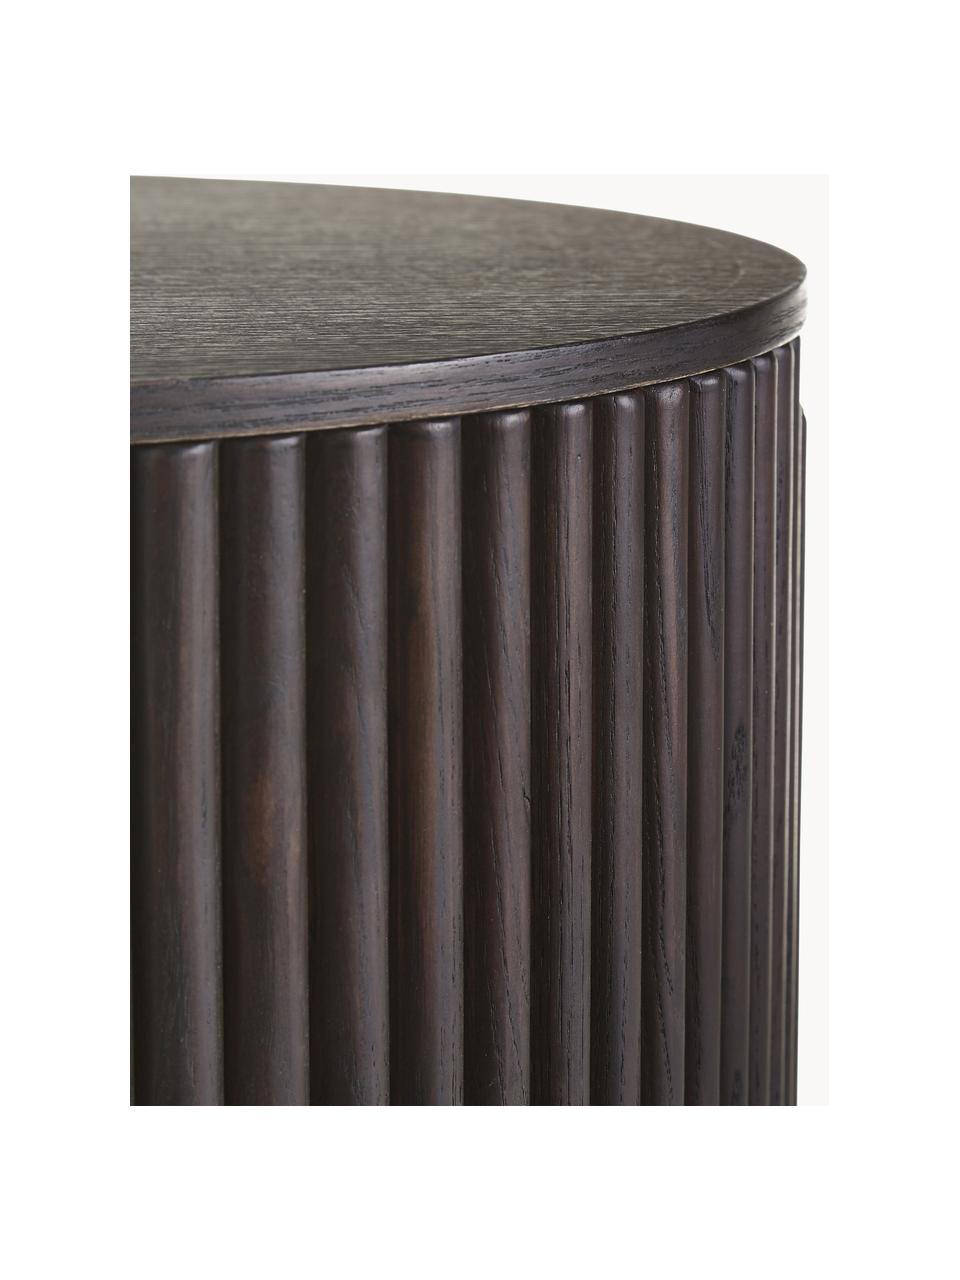 Kulatý dřevěný odkládací stolek s úložným prostorem Nele, Dřevovláknitá deska střední hustoty (MDF) s jasanovou dýhou, Jasanové dřevo, tmavě hnědě lakované, Ø 40 cm, V 51 cm